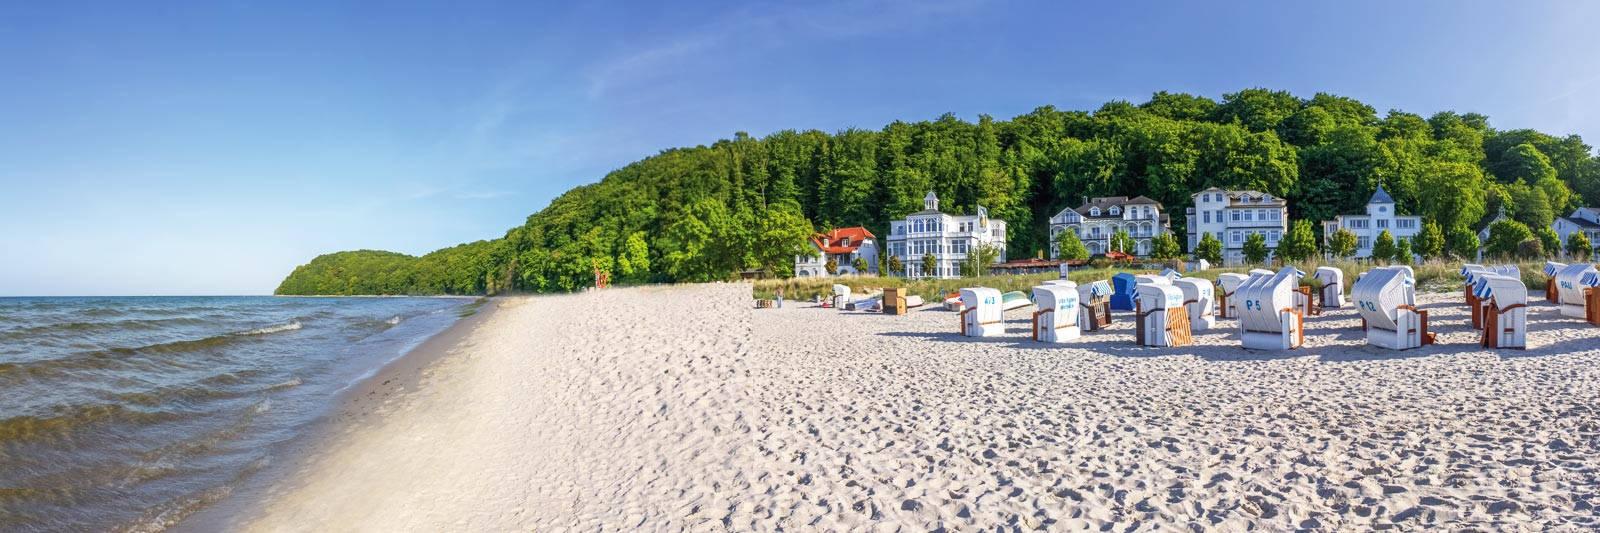 28 Ferienwohnungen und Ferienhäuser in Lärz - tourist-online.de